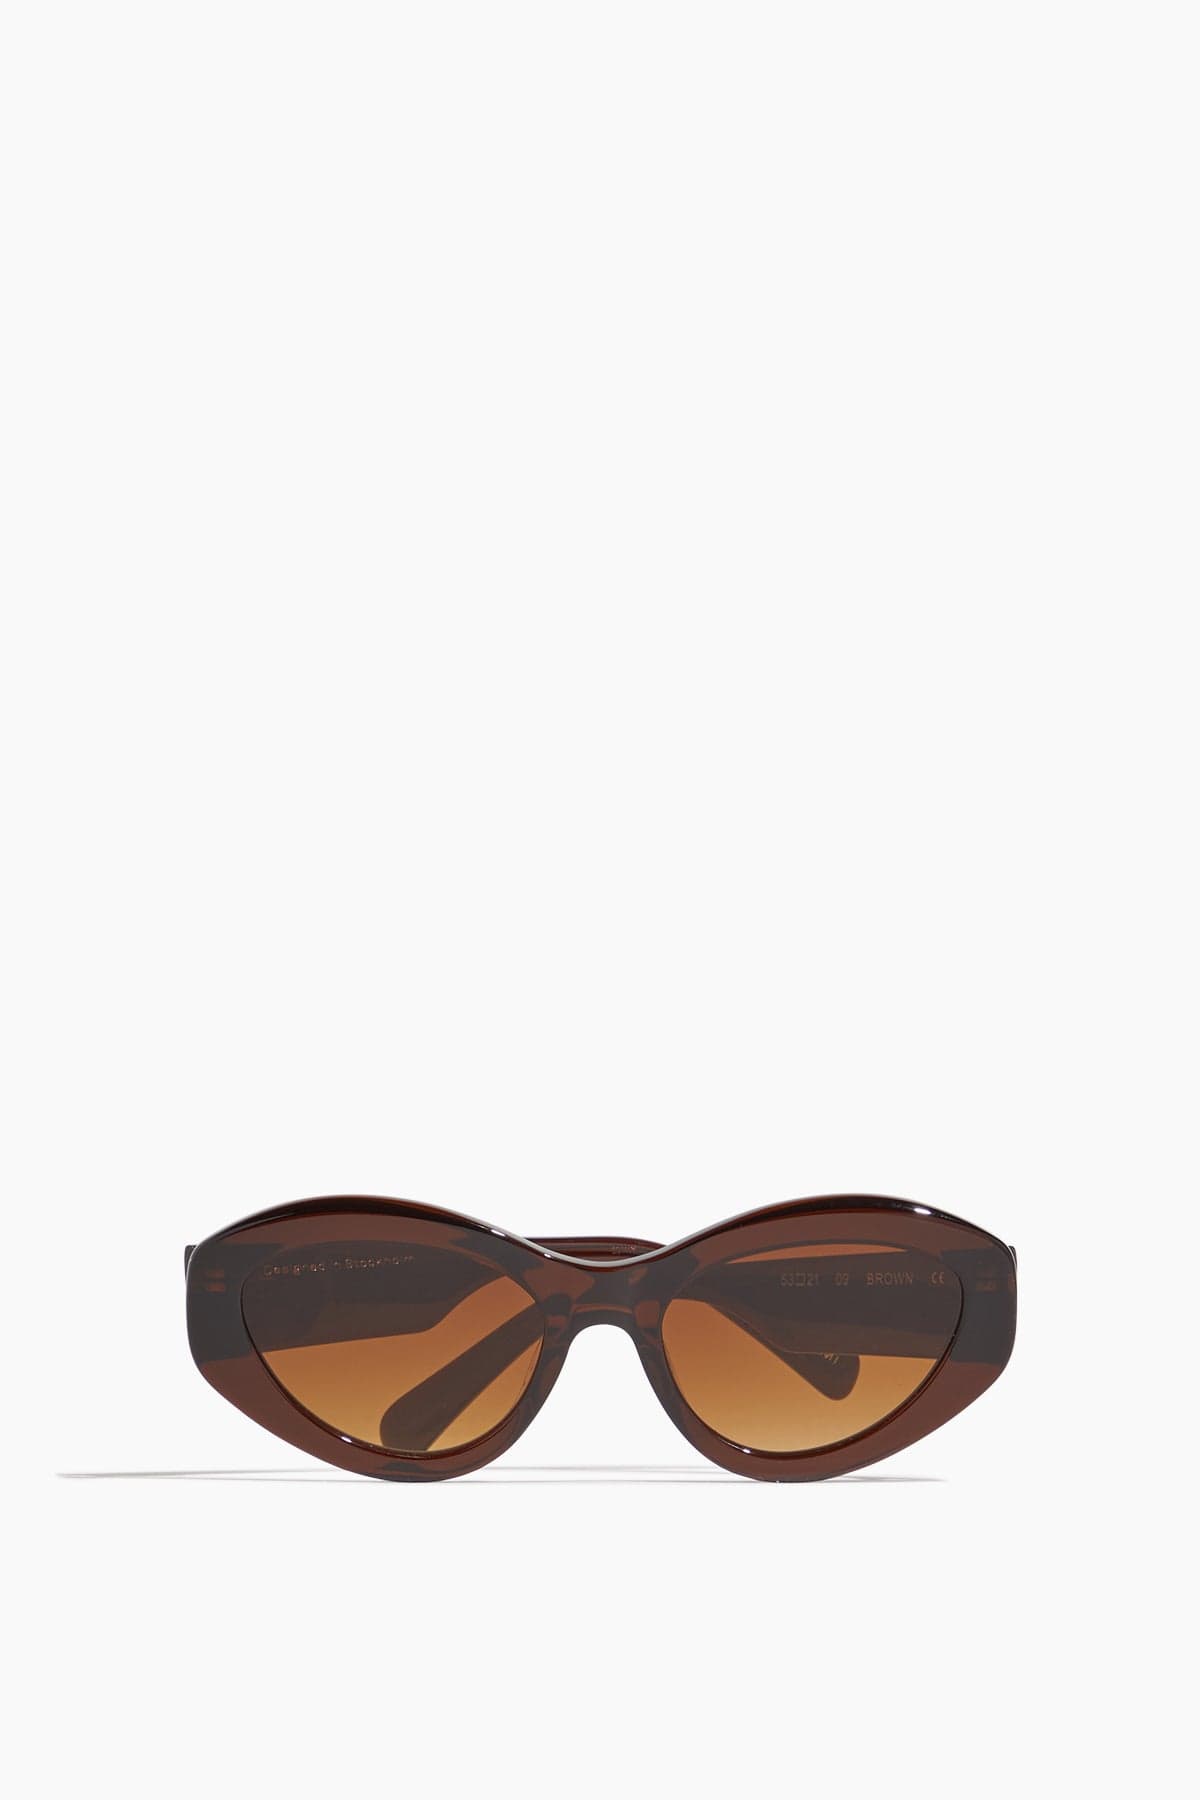 Chimi Sunglasses #09 Sunglasses in Brown